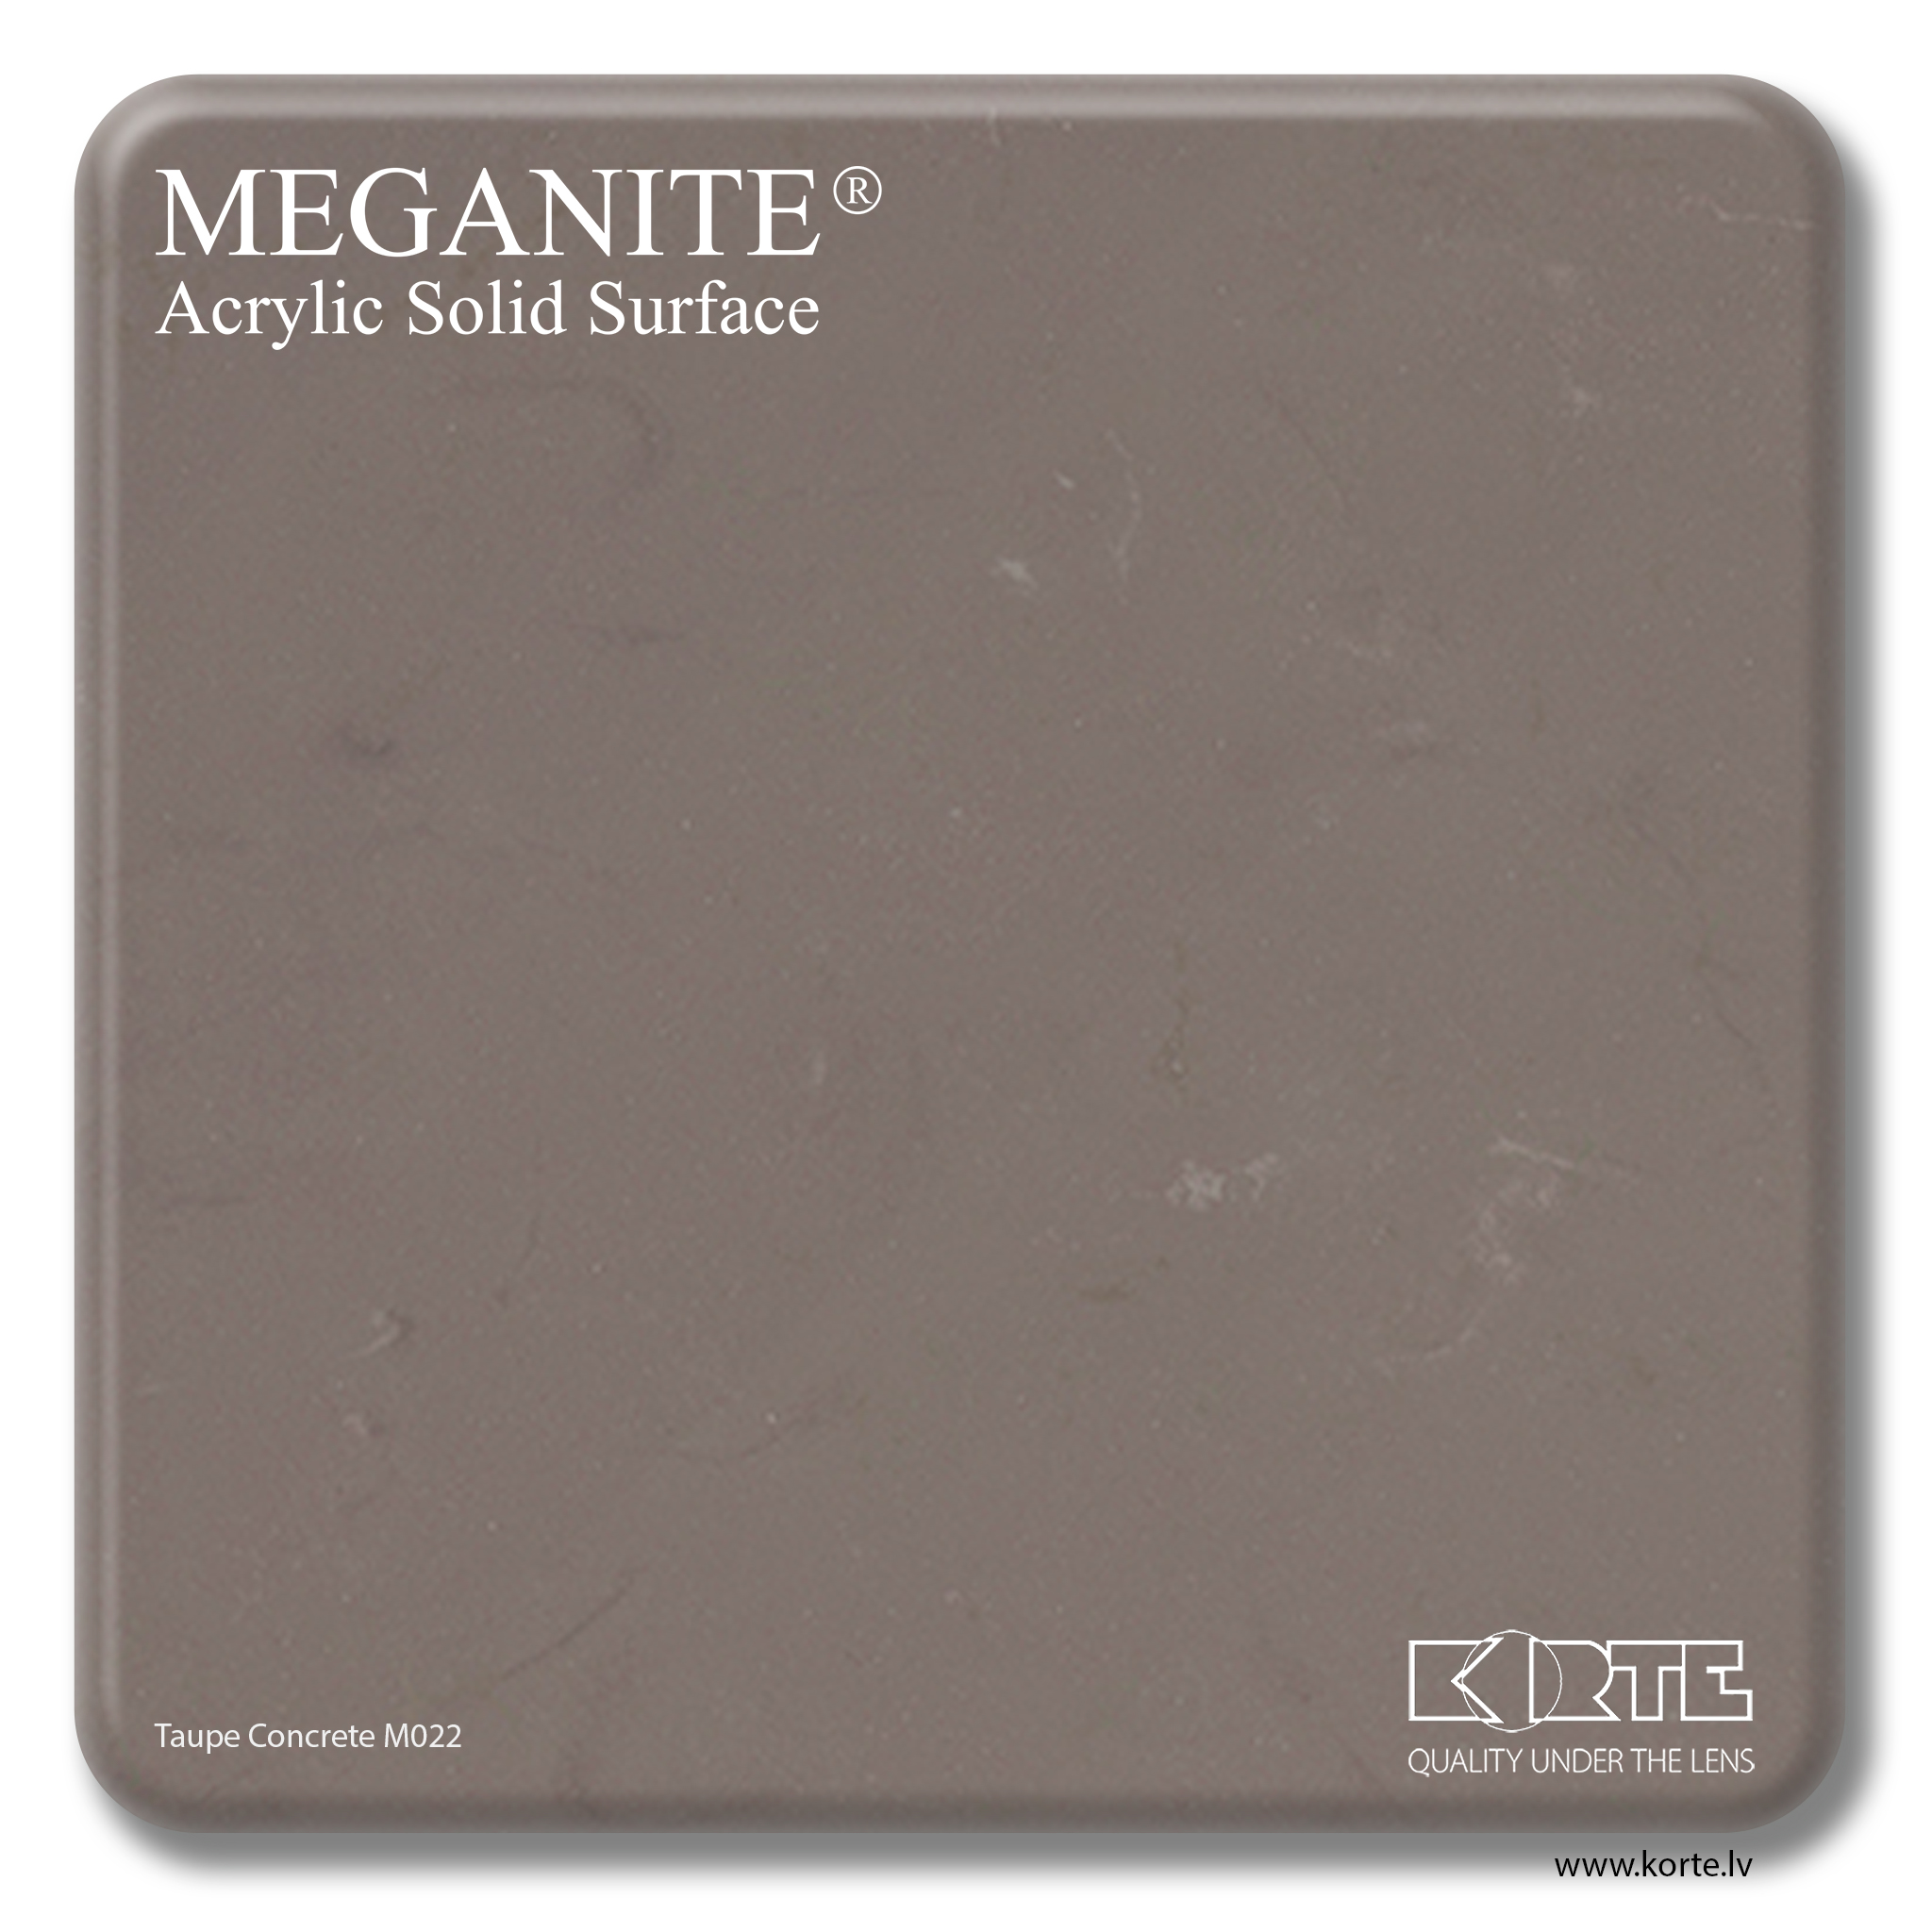 Meganite Taupe Concrete M022